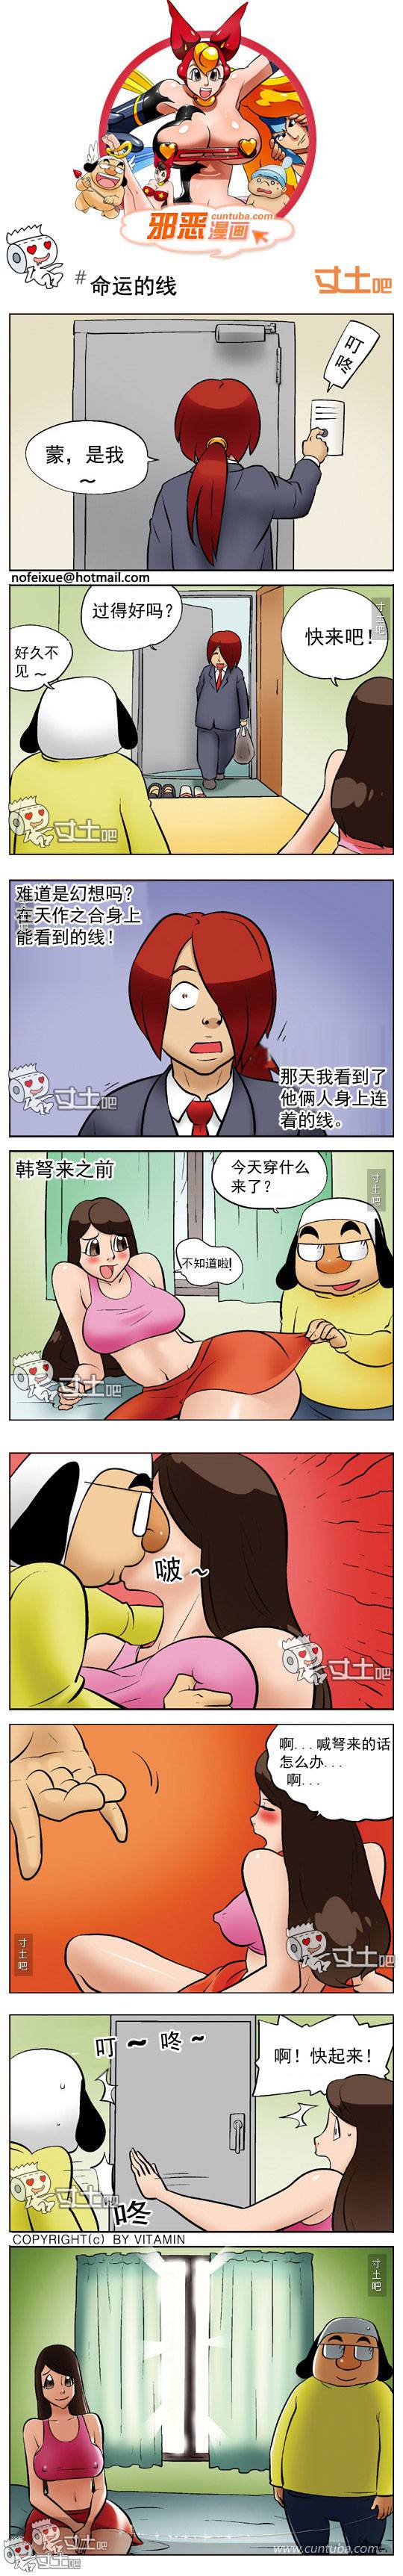 邪恶漫画爆笑囧图第235刊：紧急时刻